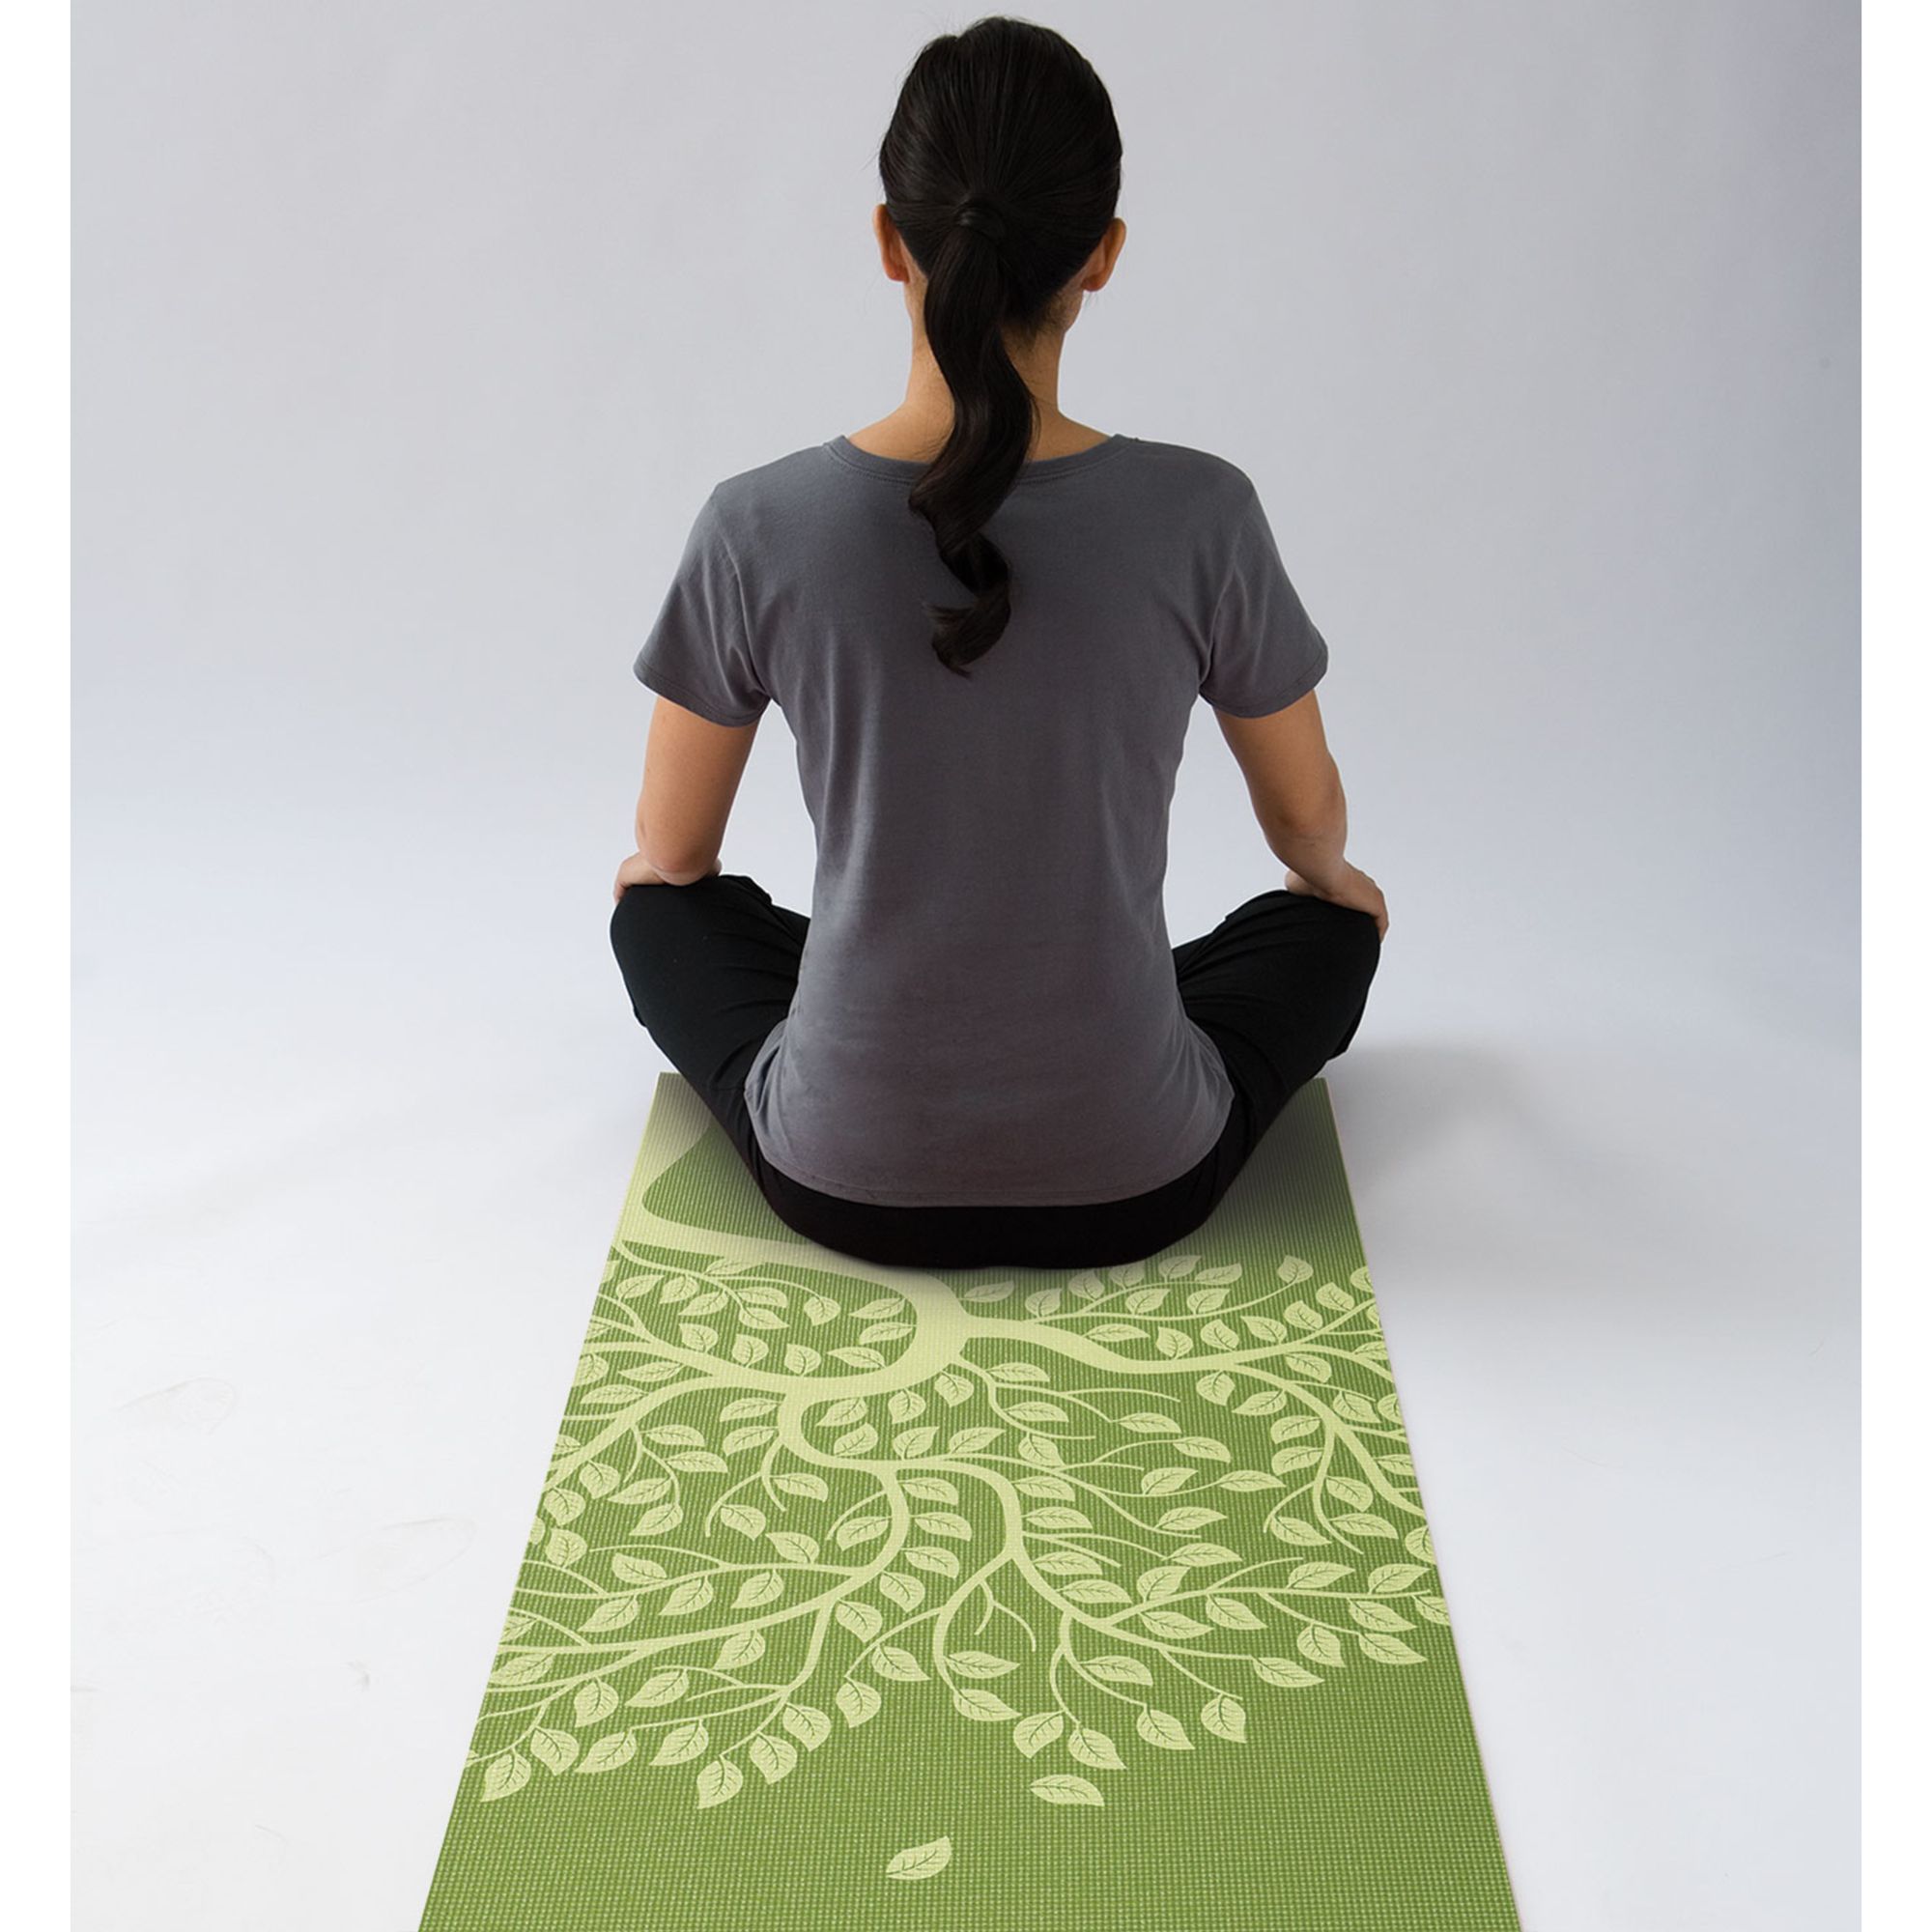 gaiam yoga mat green